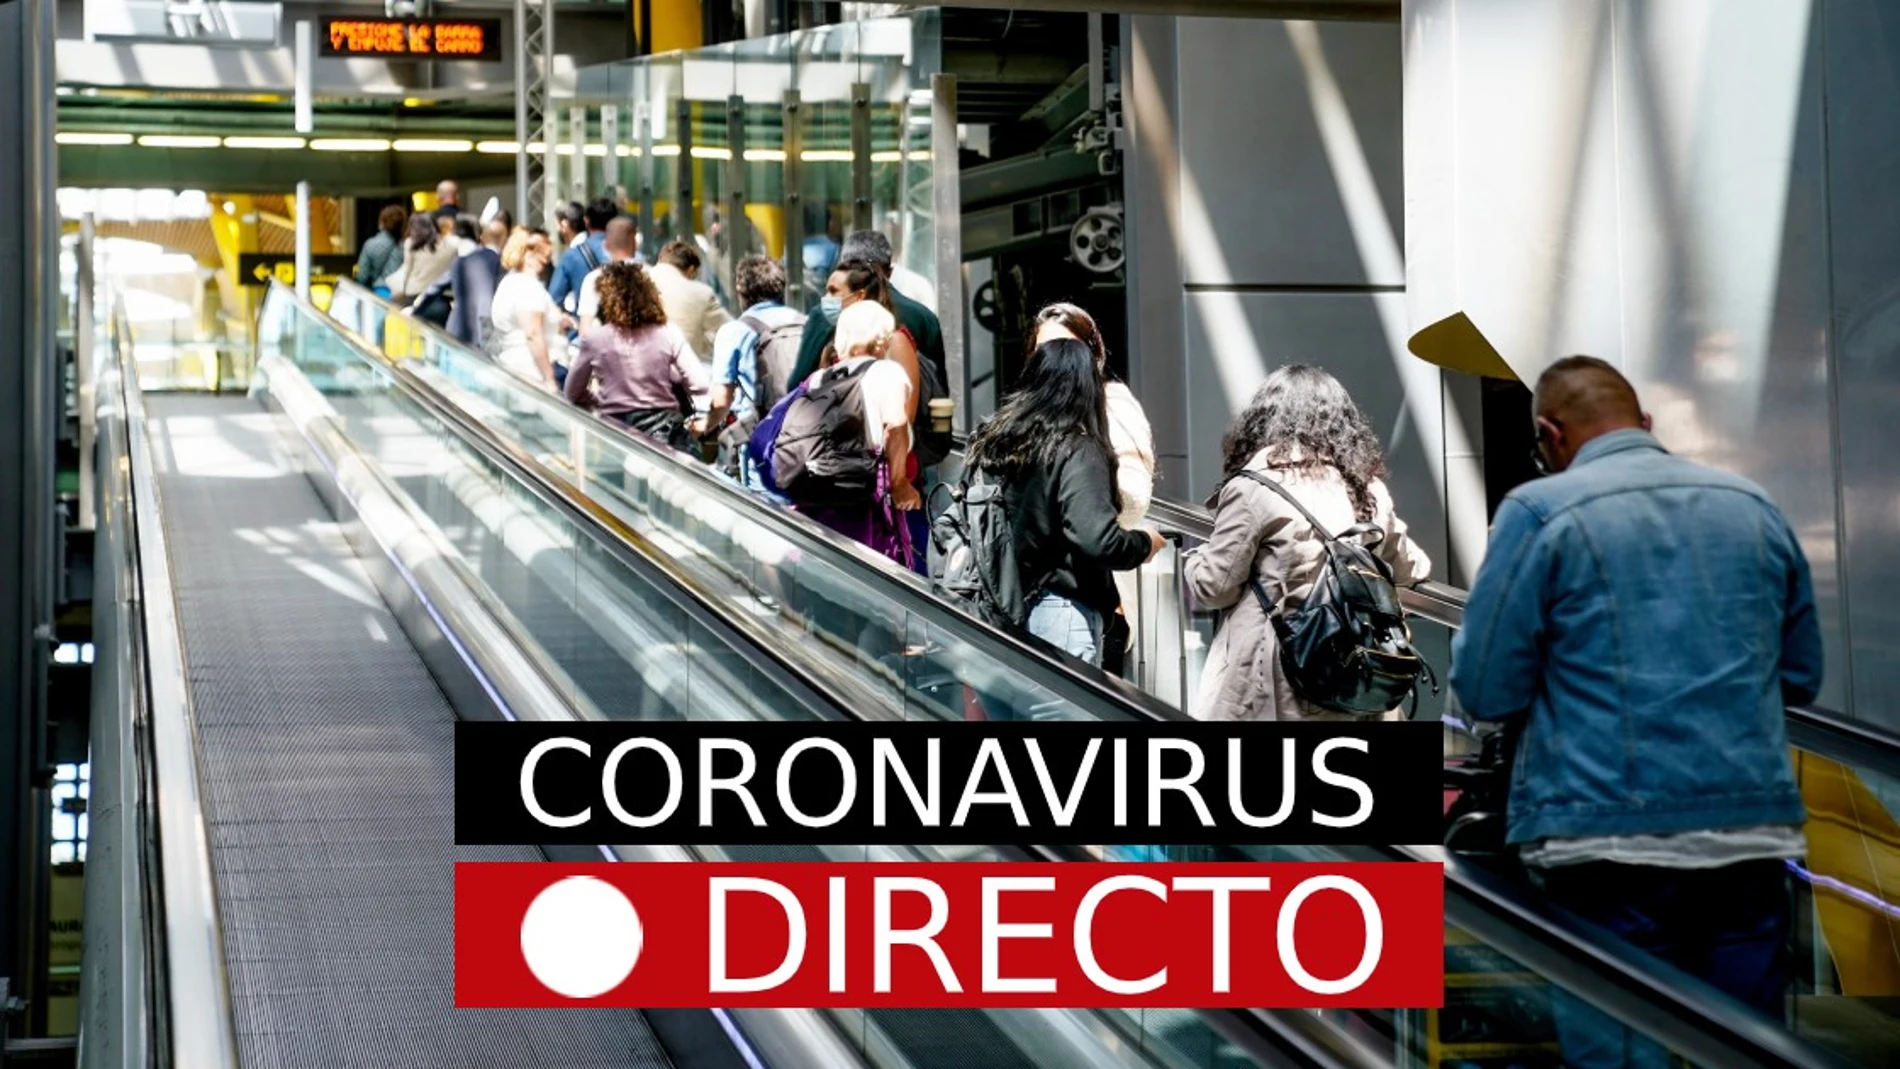 Última hora de medidas y restricciones por coronavirus en España, hoy | Campaña de vacuna de COVID-19 e incidencia en Madrid